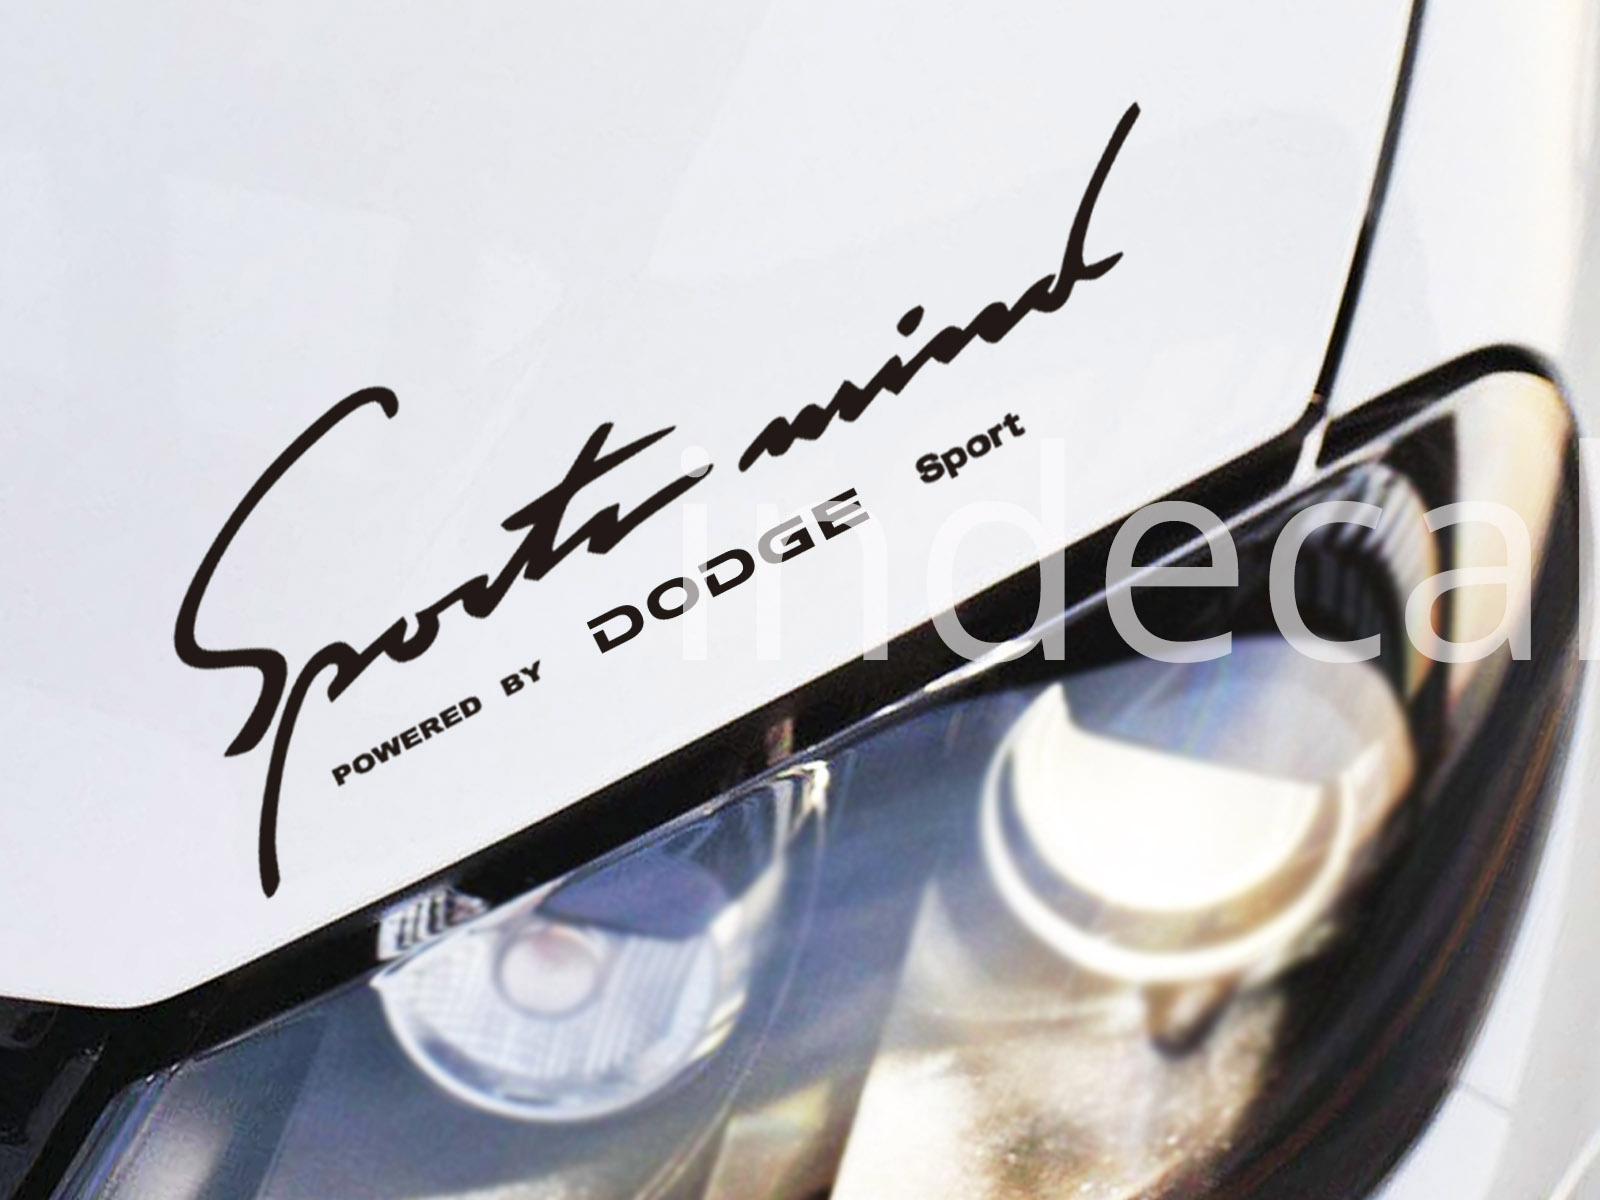 1 x Dodge Sports Mind Sticker - Black